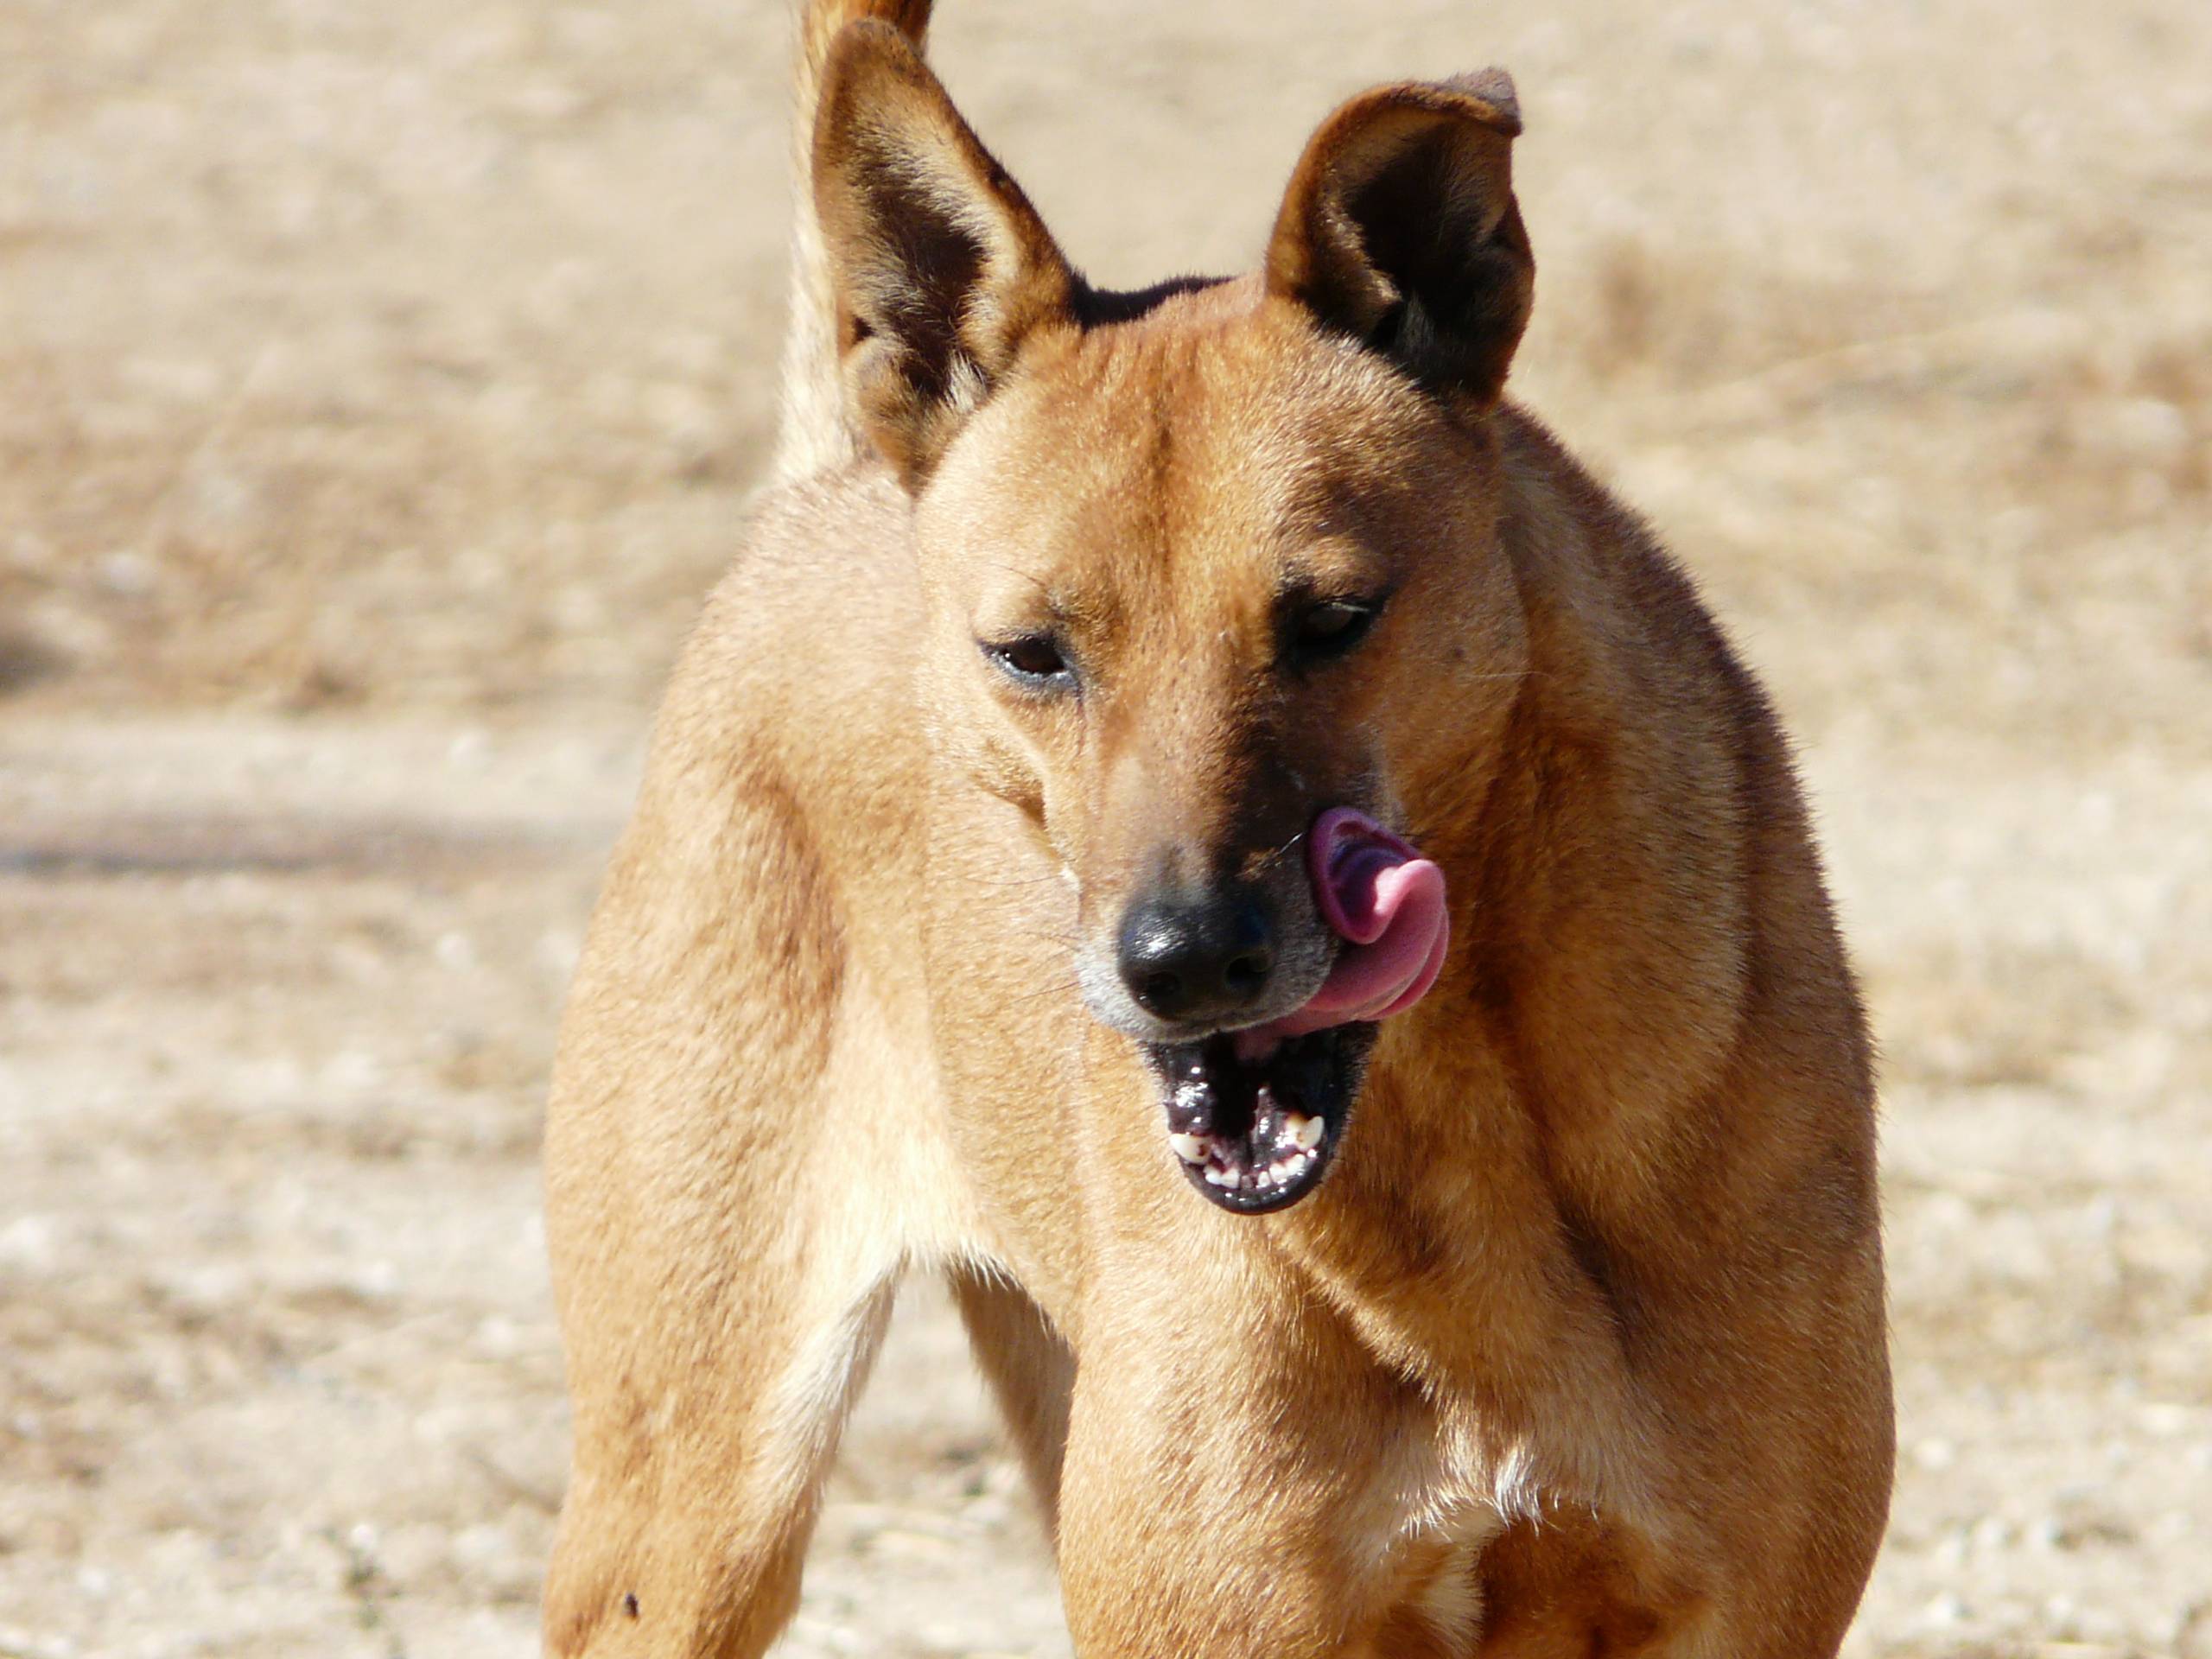 Португальская водяная собака: стандарт вассерхунда, внешность и характер породы, как содержать и ухаживать за кан даигуа, отзывы и фото